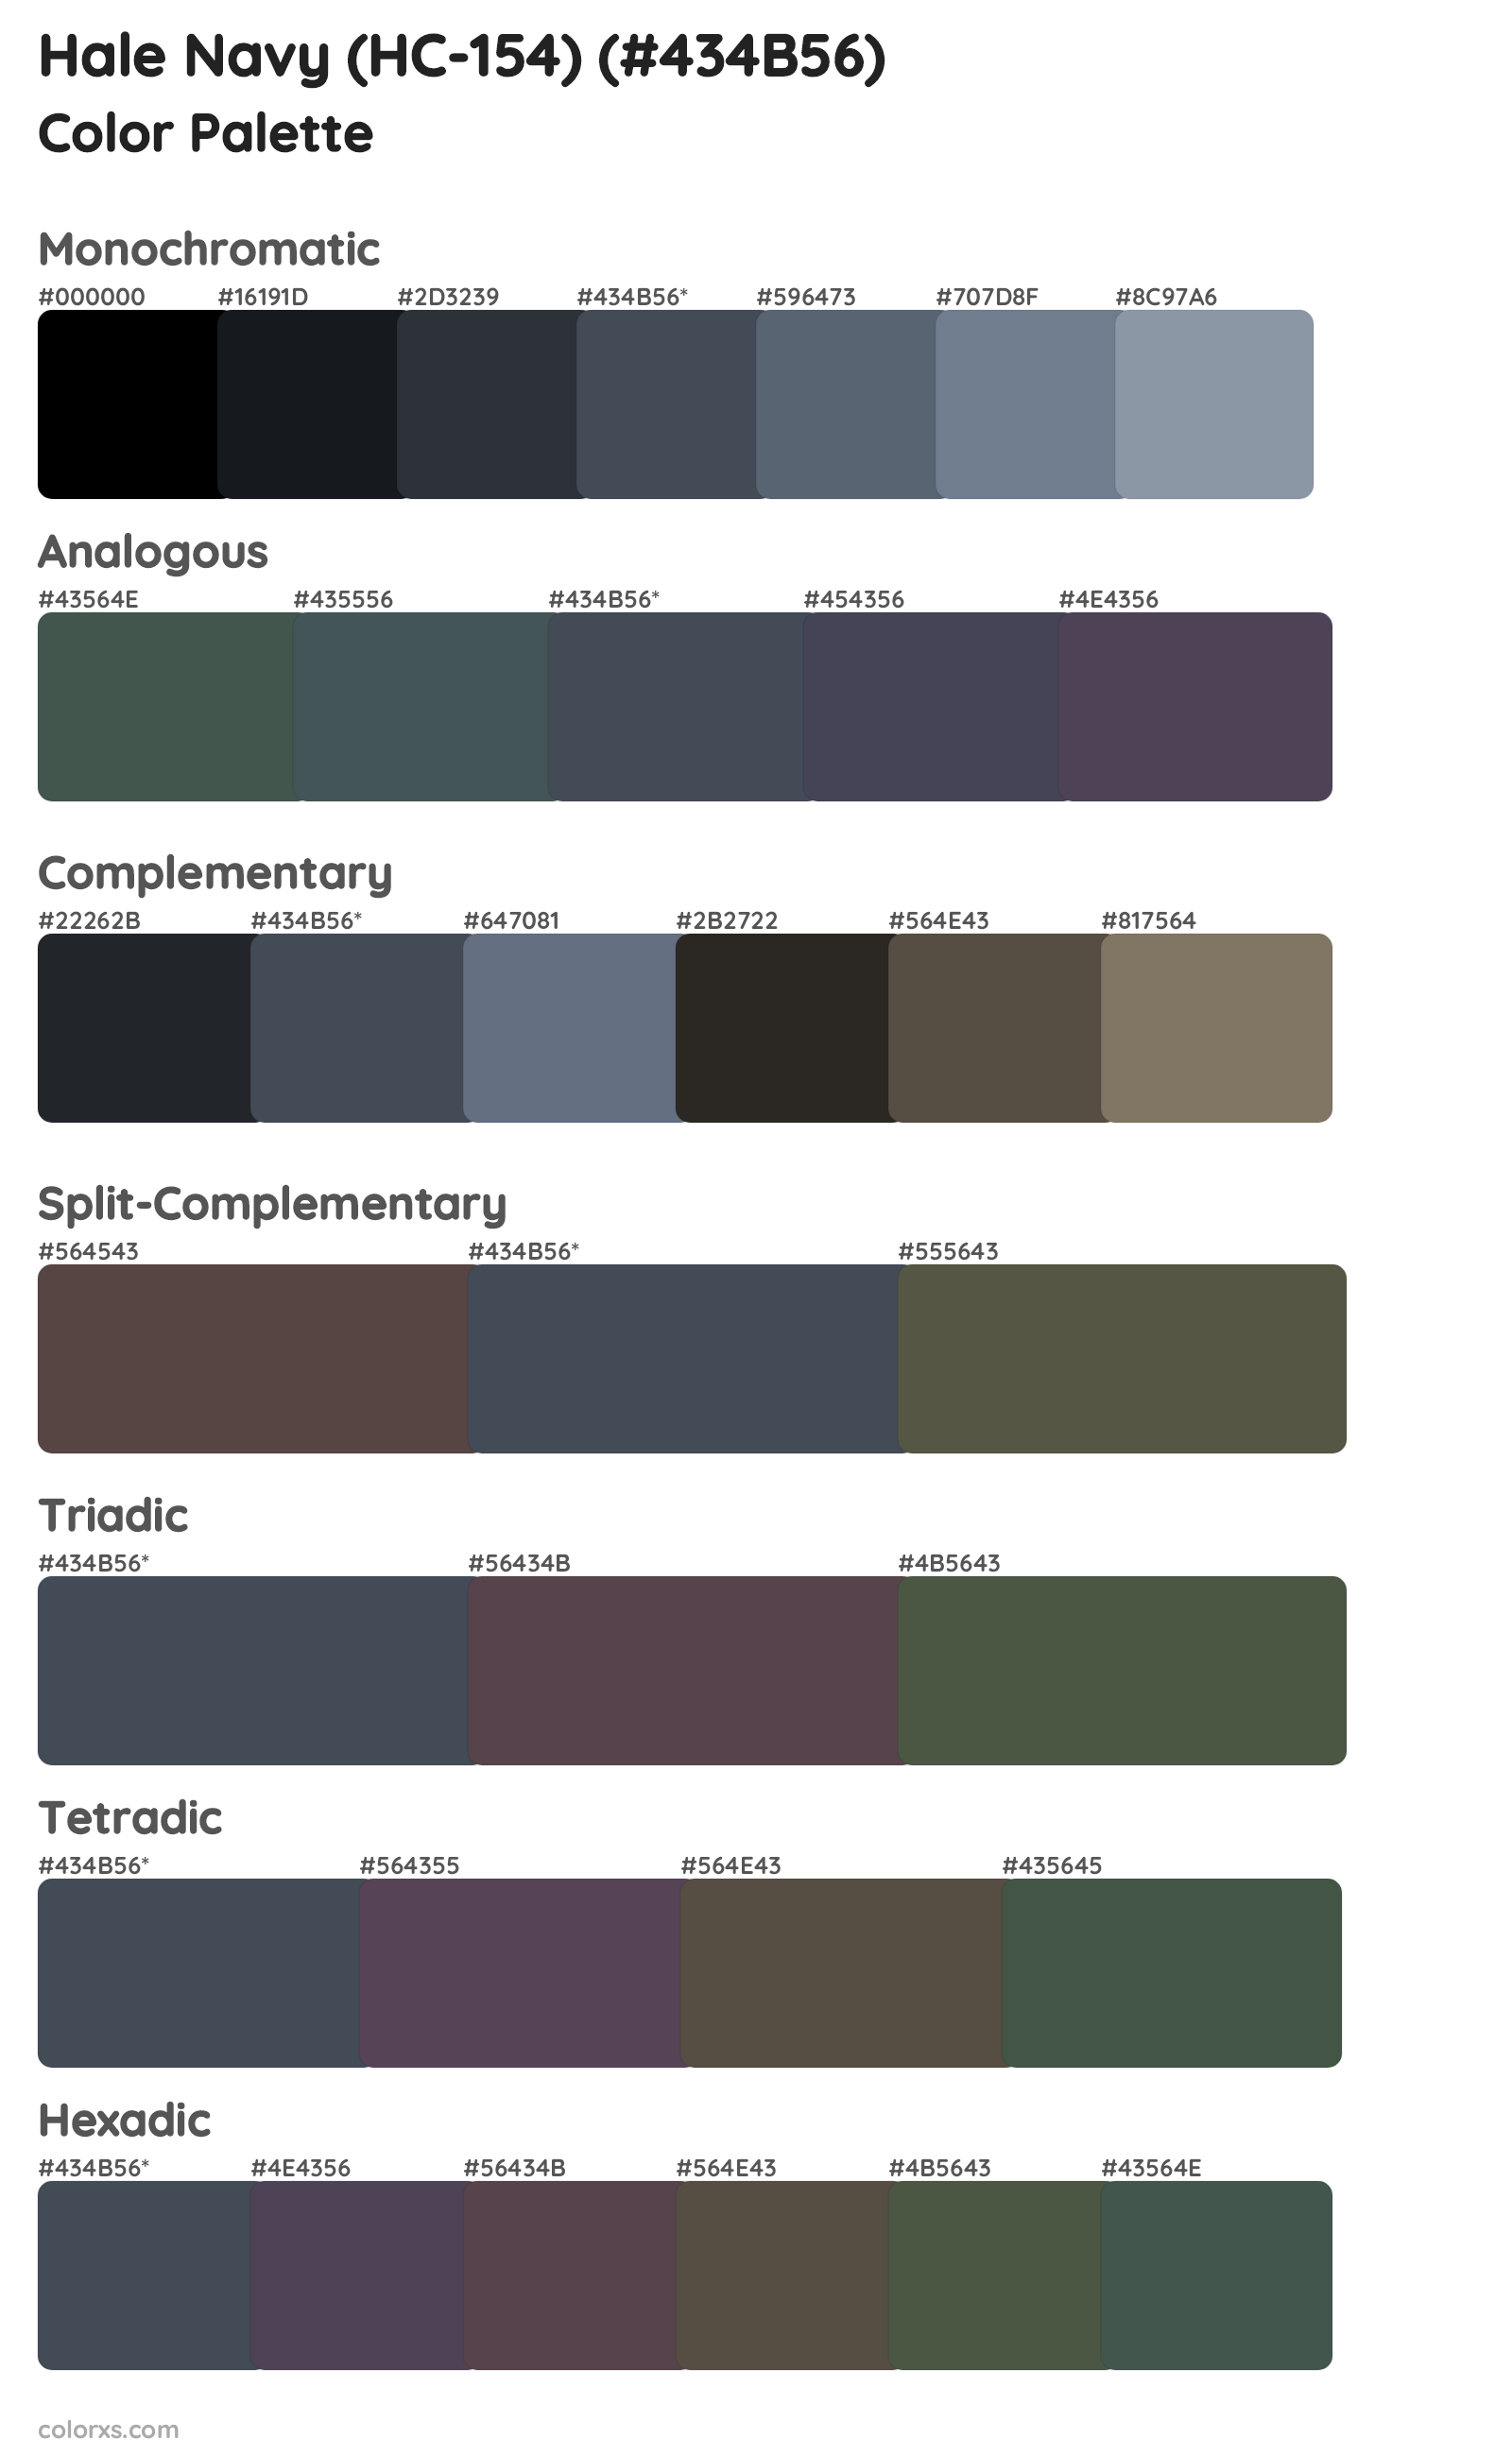 Hale Navy (HC-154) Color Scheme Palettes